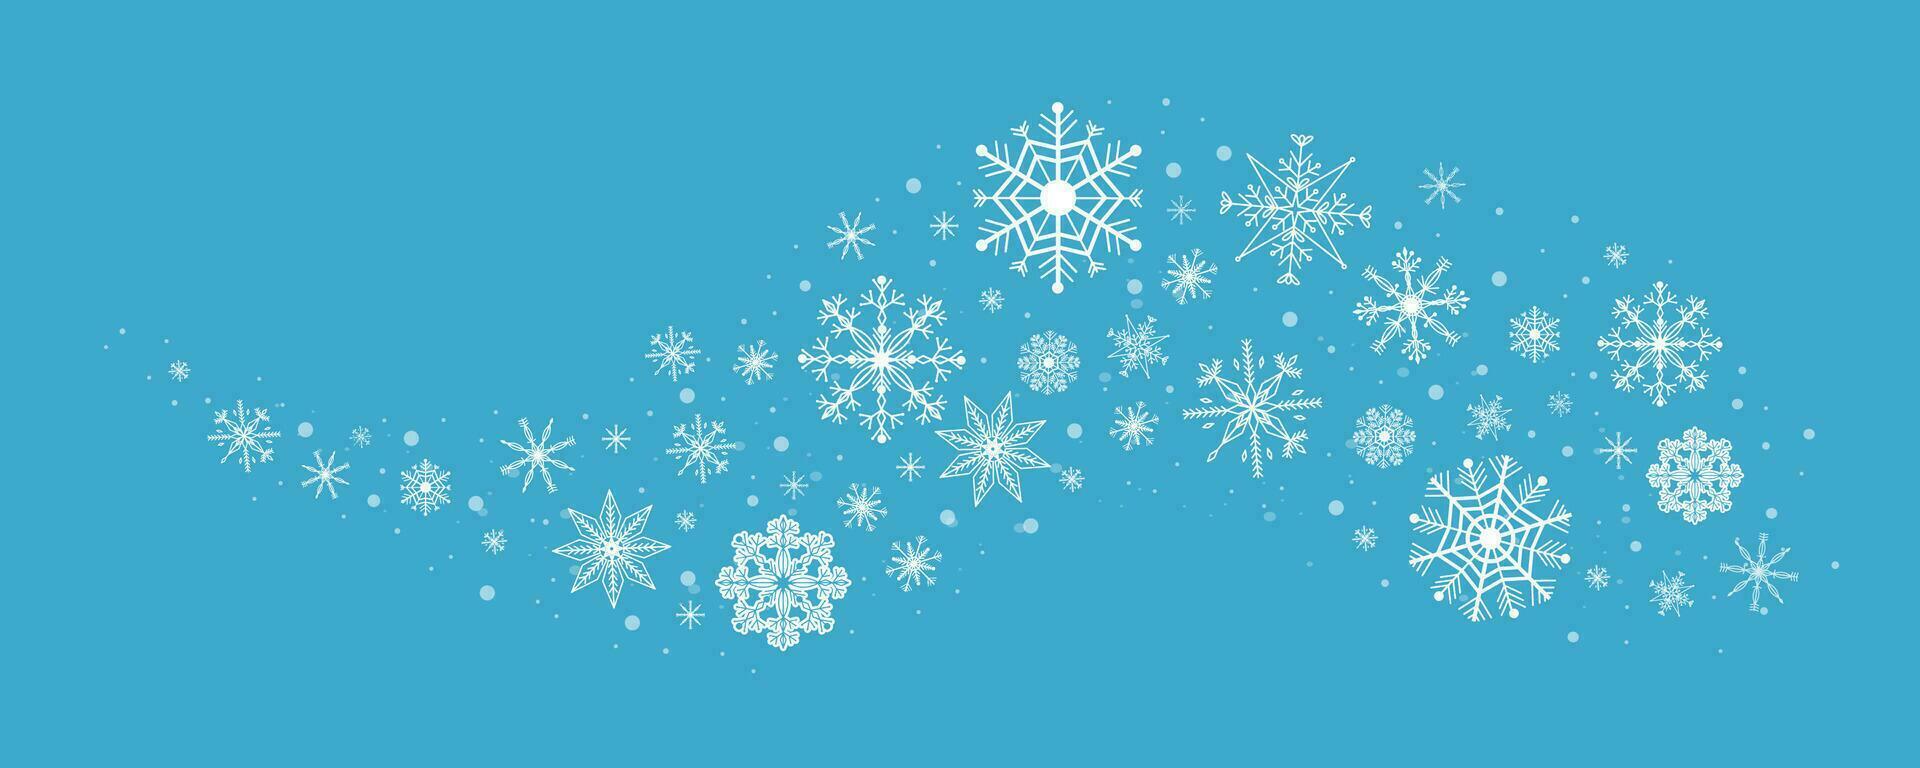 ola copo de nieve remolino invierno nieve frontera hielo decoración aislado. fiesta cristal curva forma diseño, magia ornamento. vector ilustración